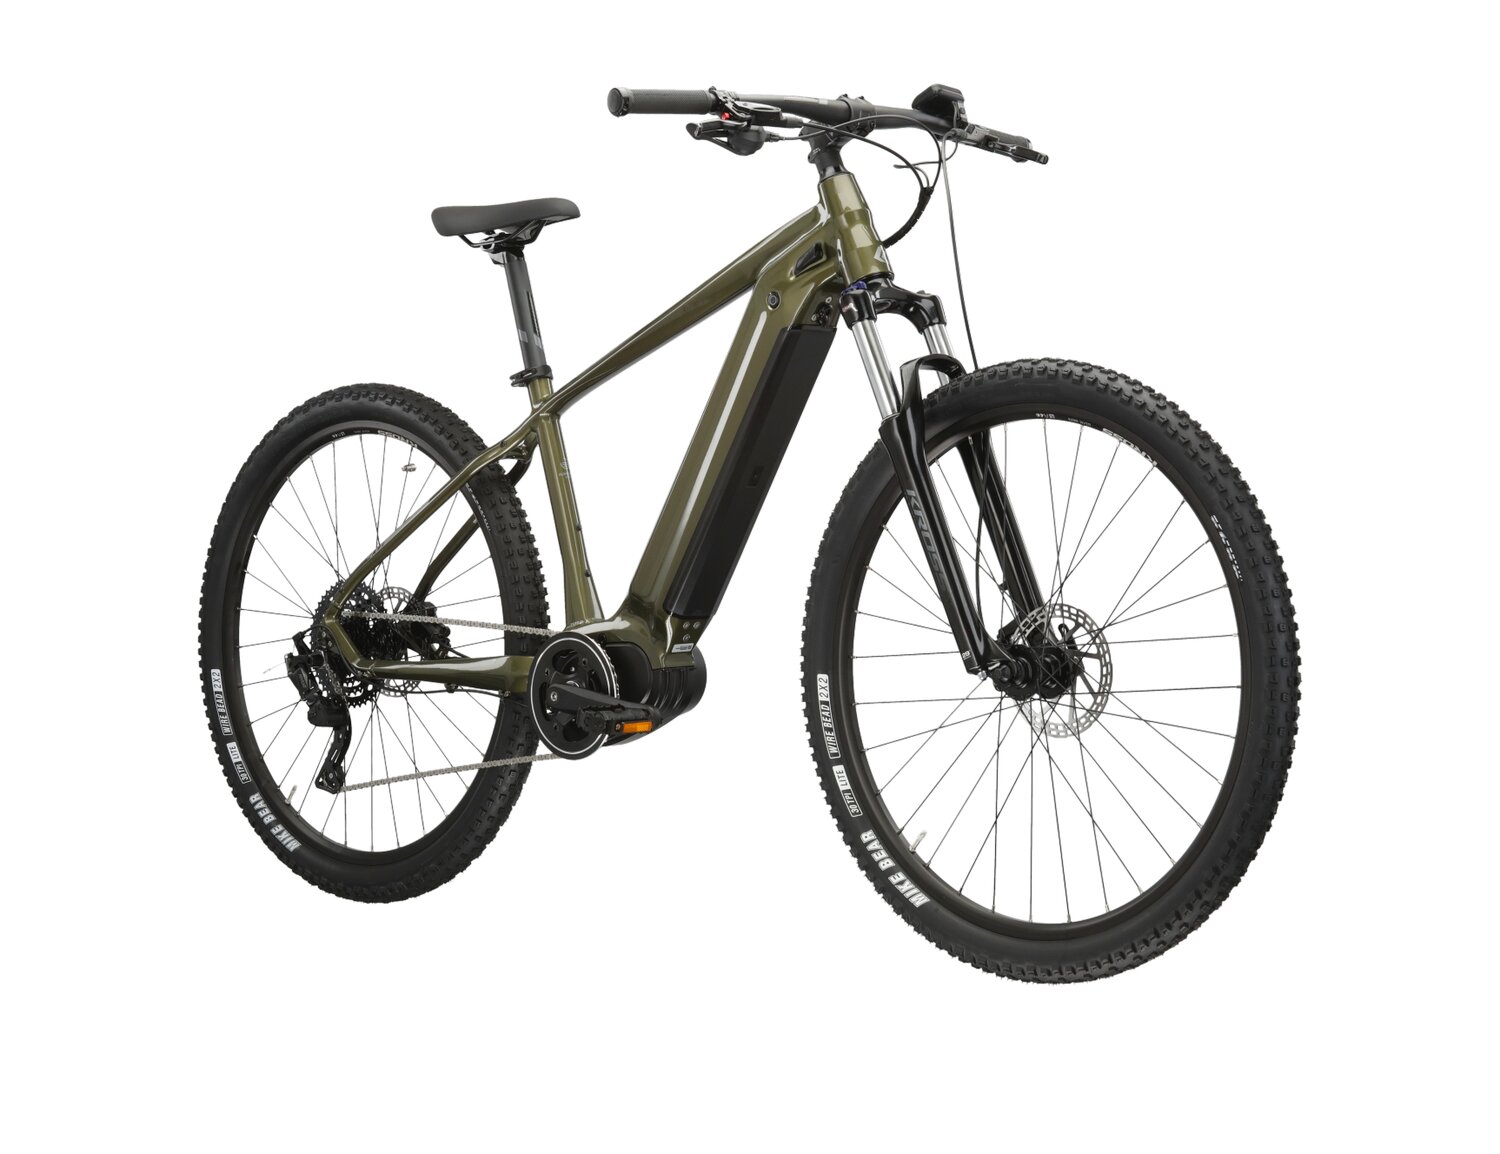 Elektryczny rower górski MTB Kross Hexagon Boost 4.0 756 Wh na aluminiowej ramie w kolorze khaki wyposażony w osprzęt Microshift i napęd elektryczny Bafang